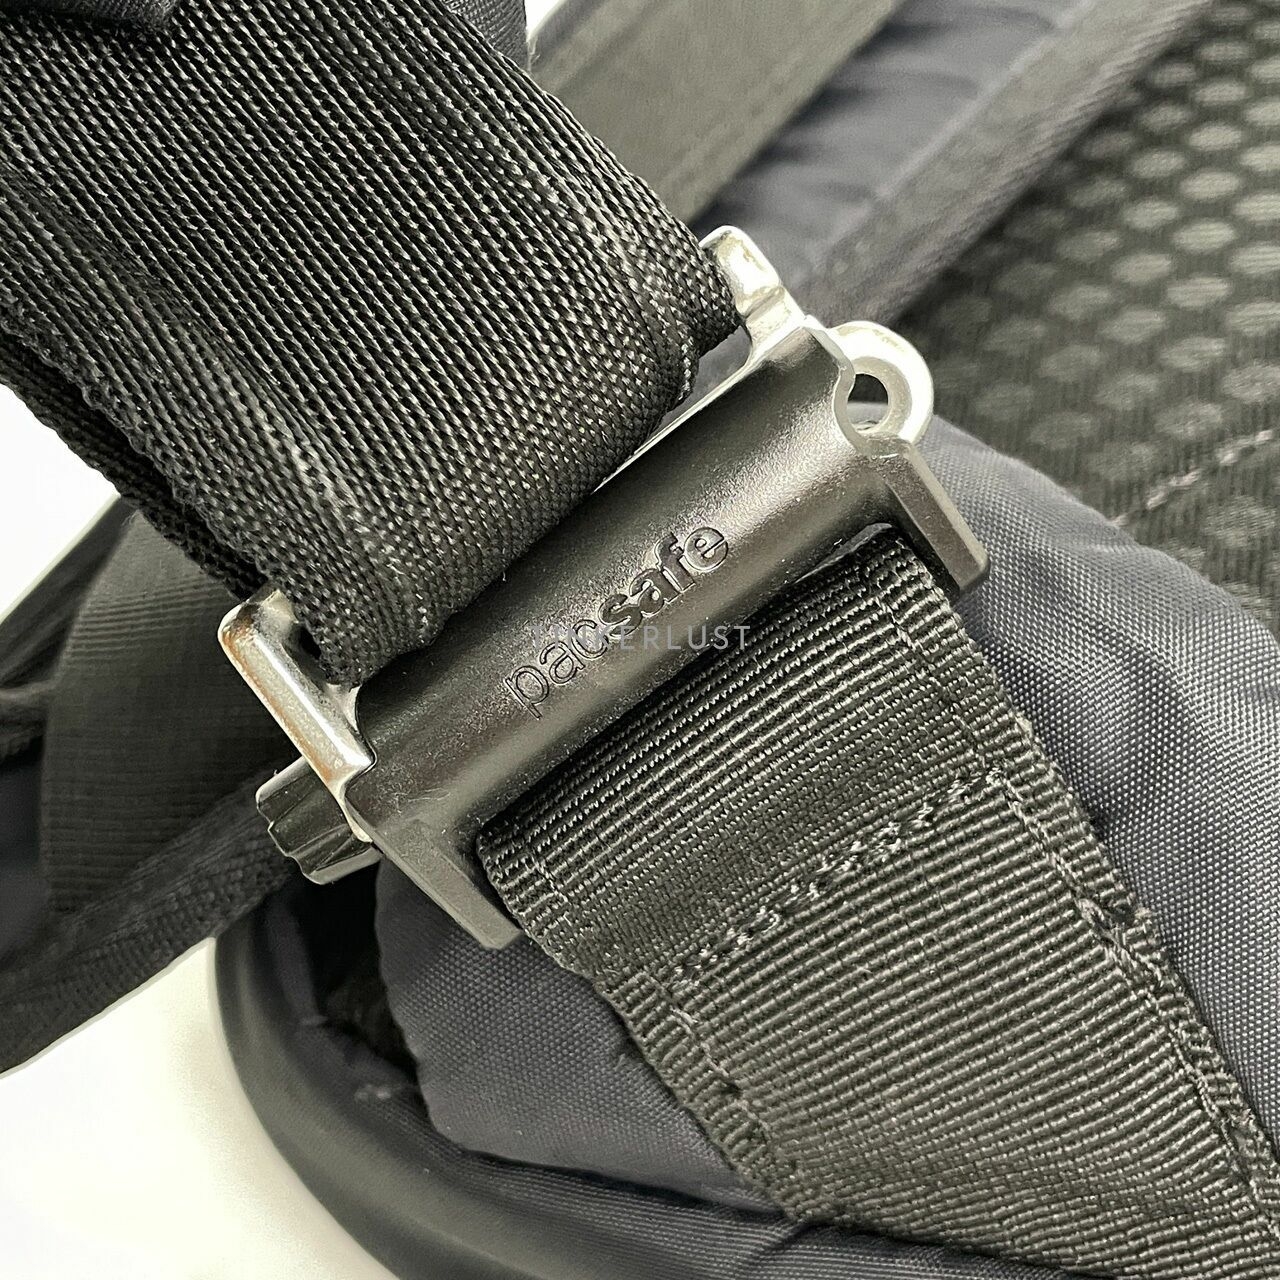 Pacsafe Black Backpack